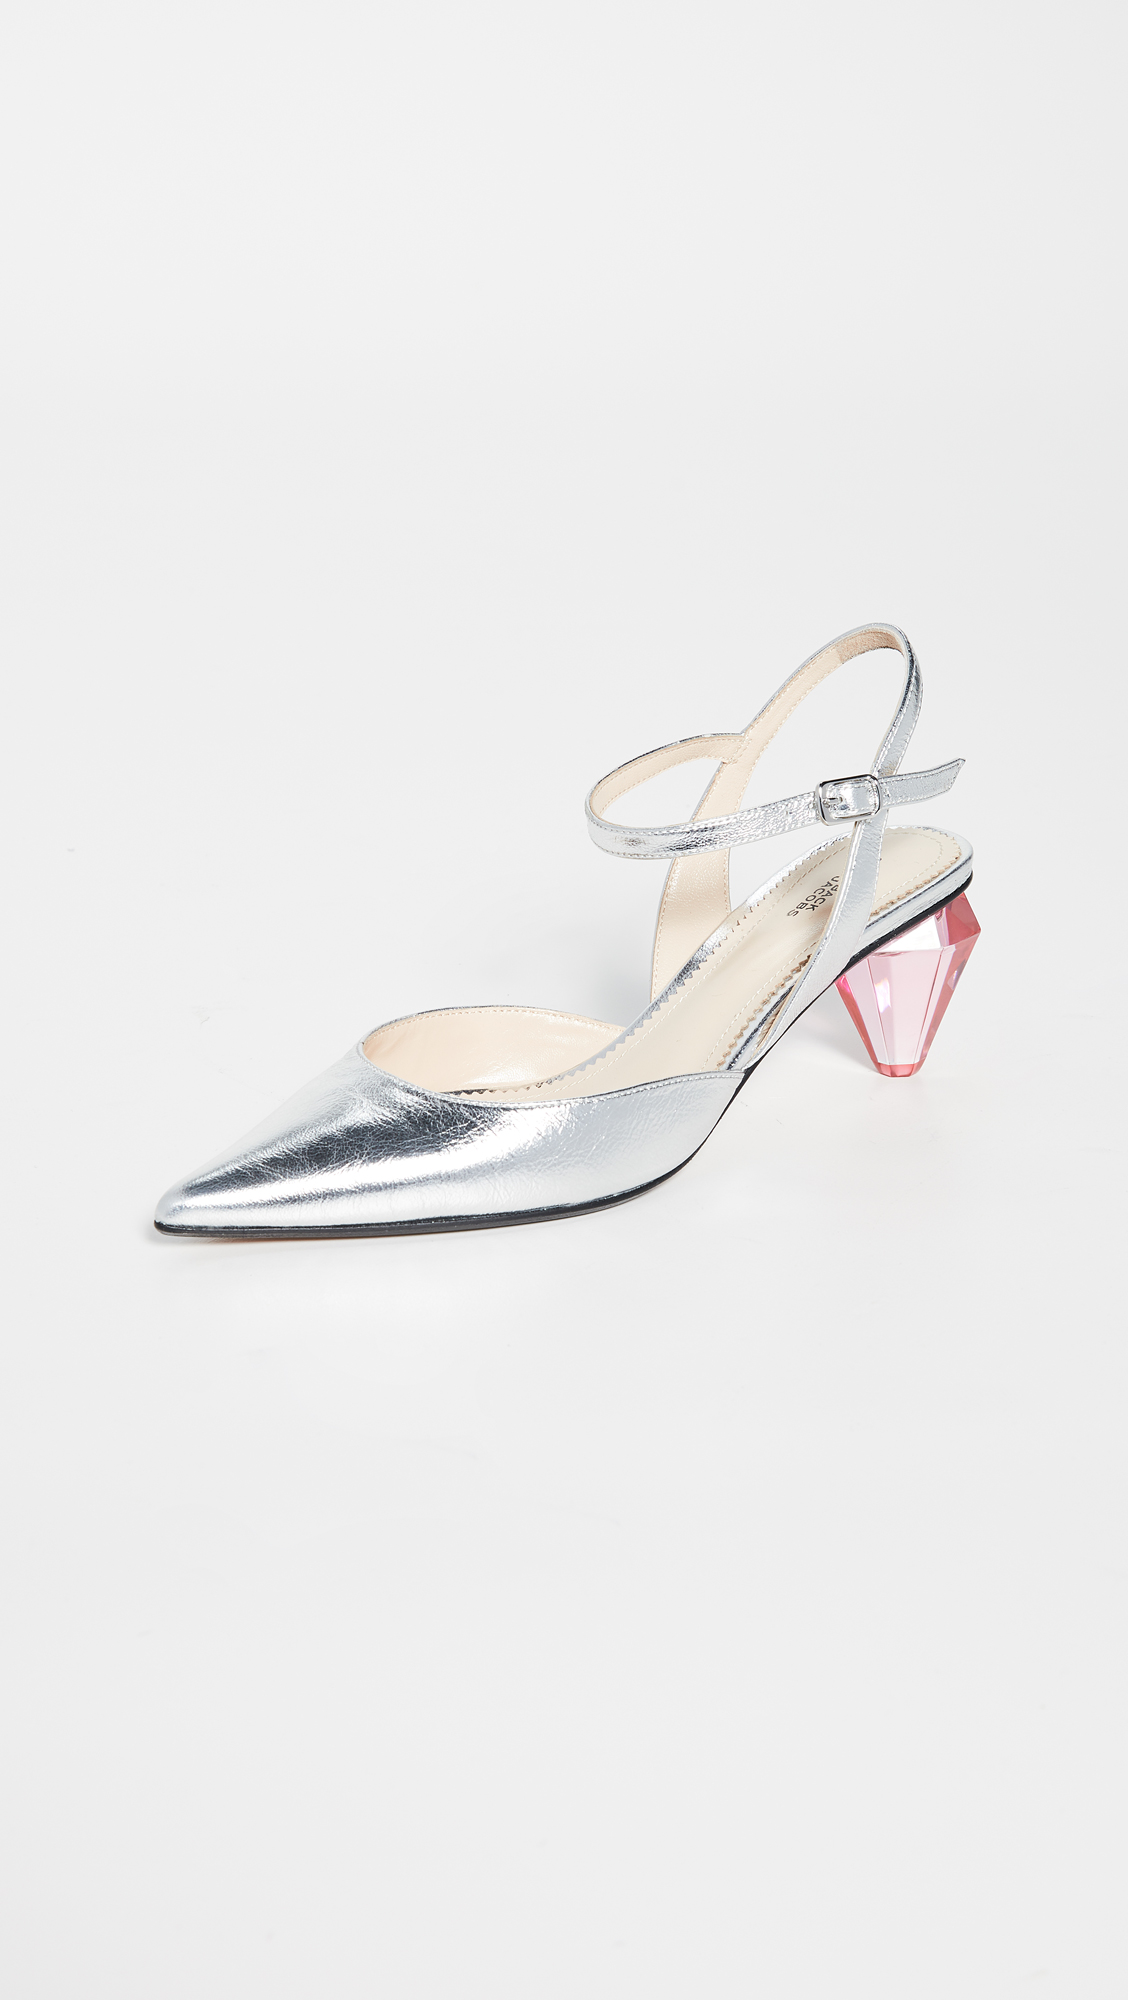 Shiny silver heel